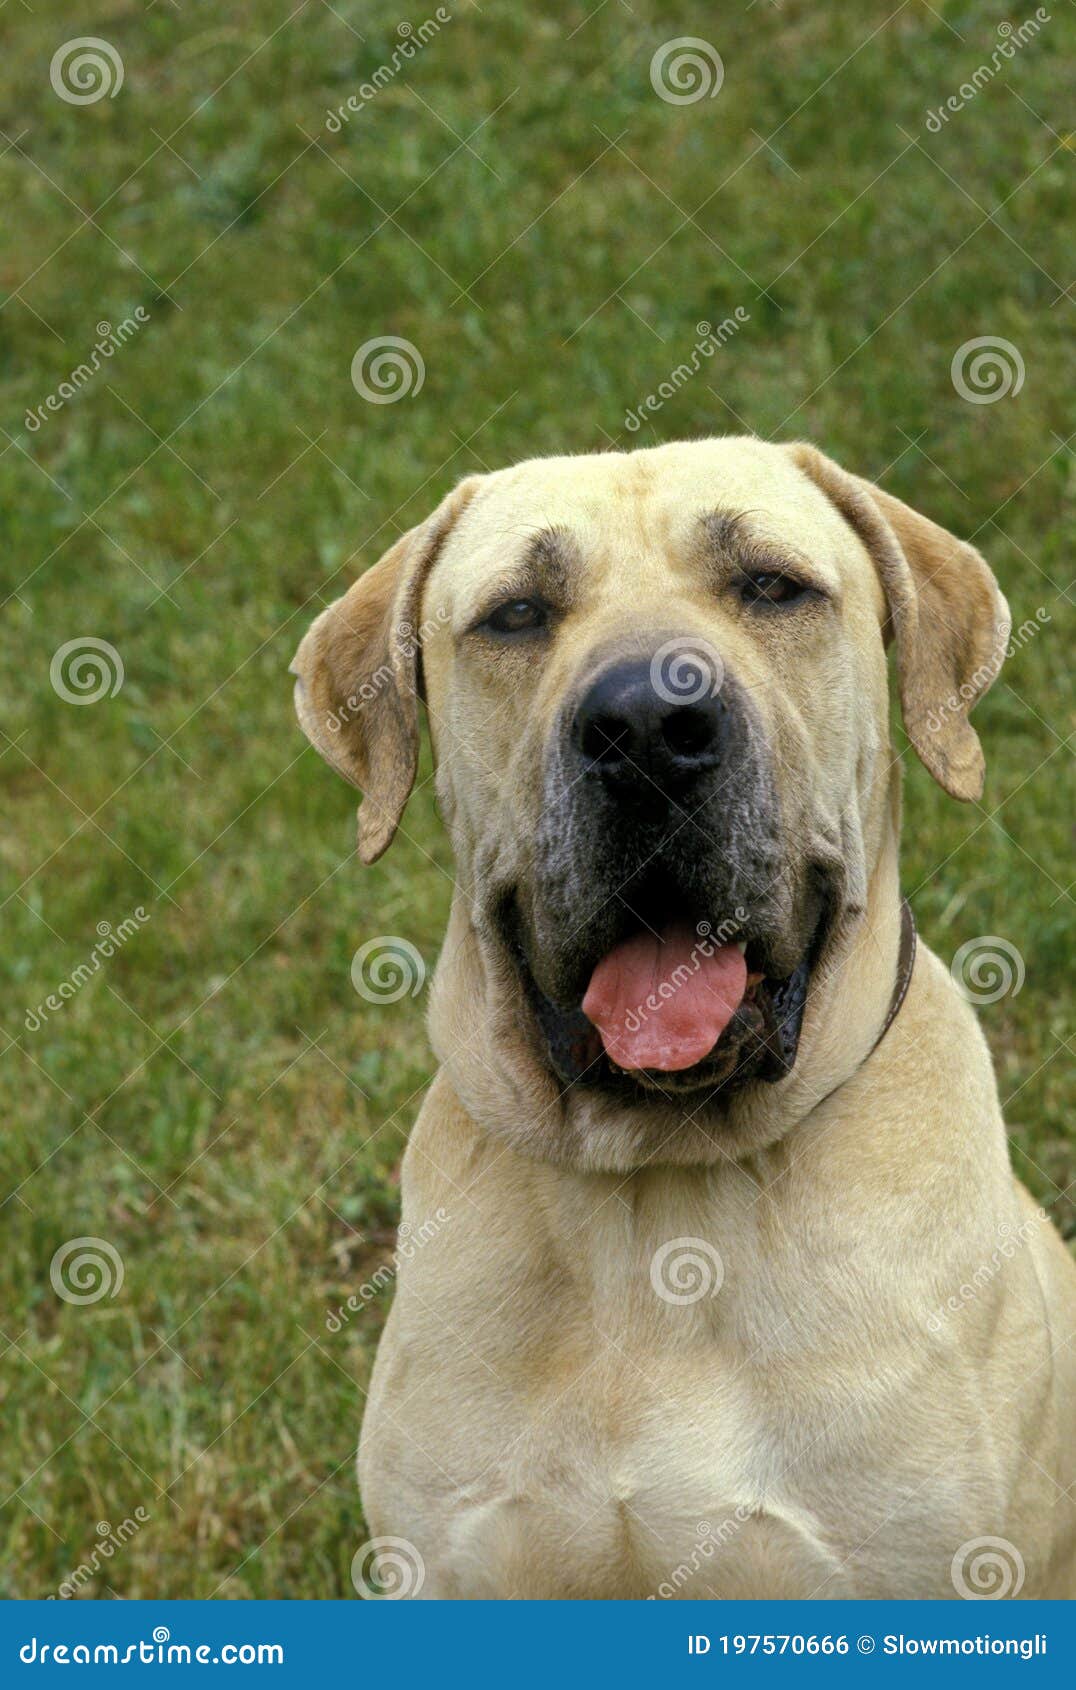 https://thumbs.dreamstime.com/z/male-fila-brasileiro-dog-breed-brazil-197570666.jpg